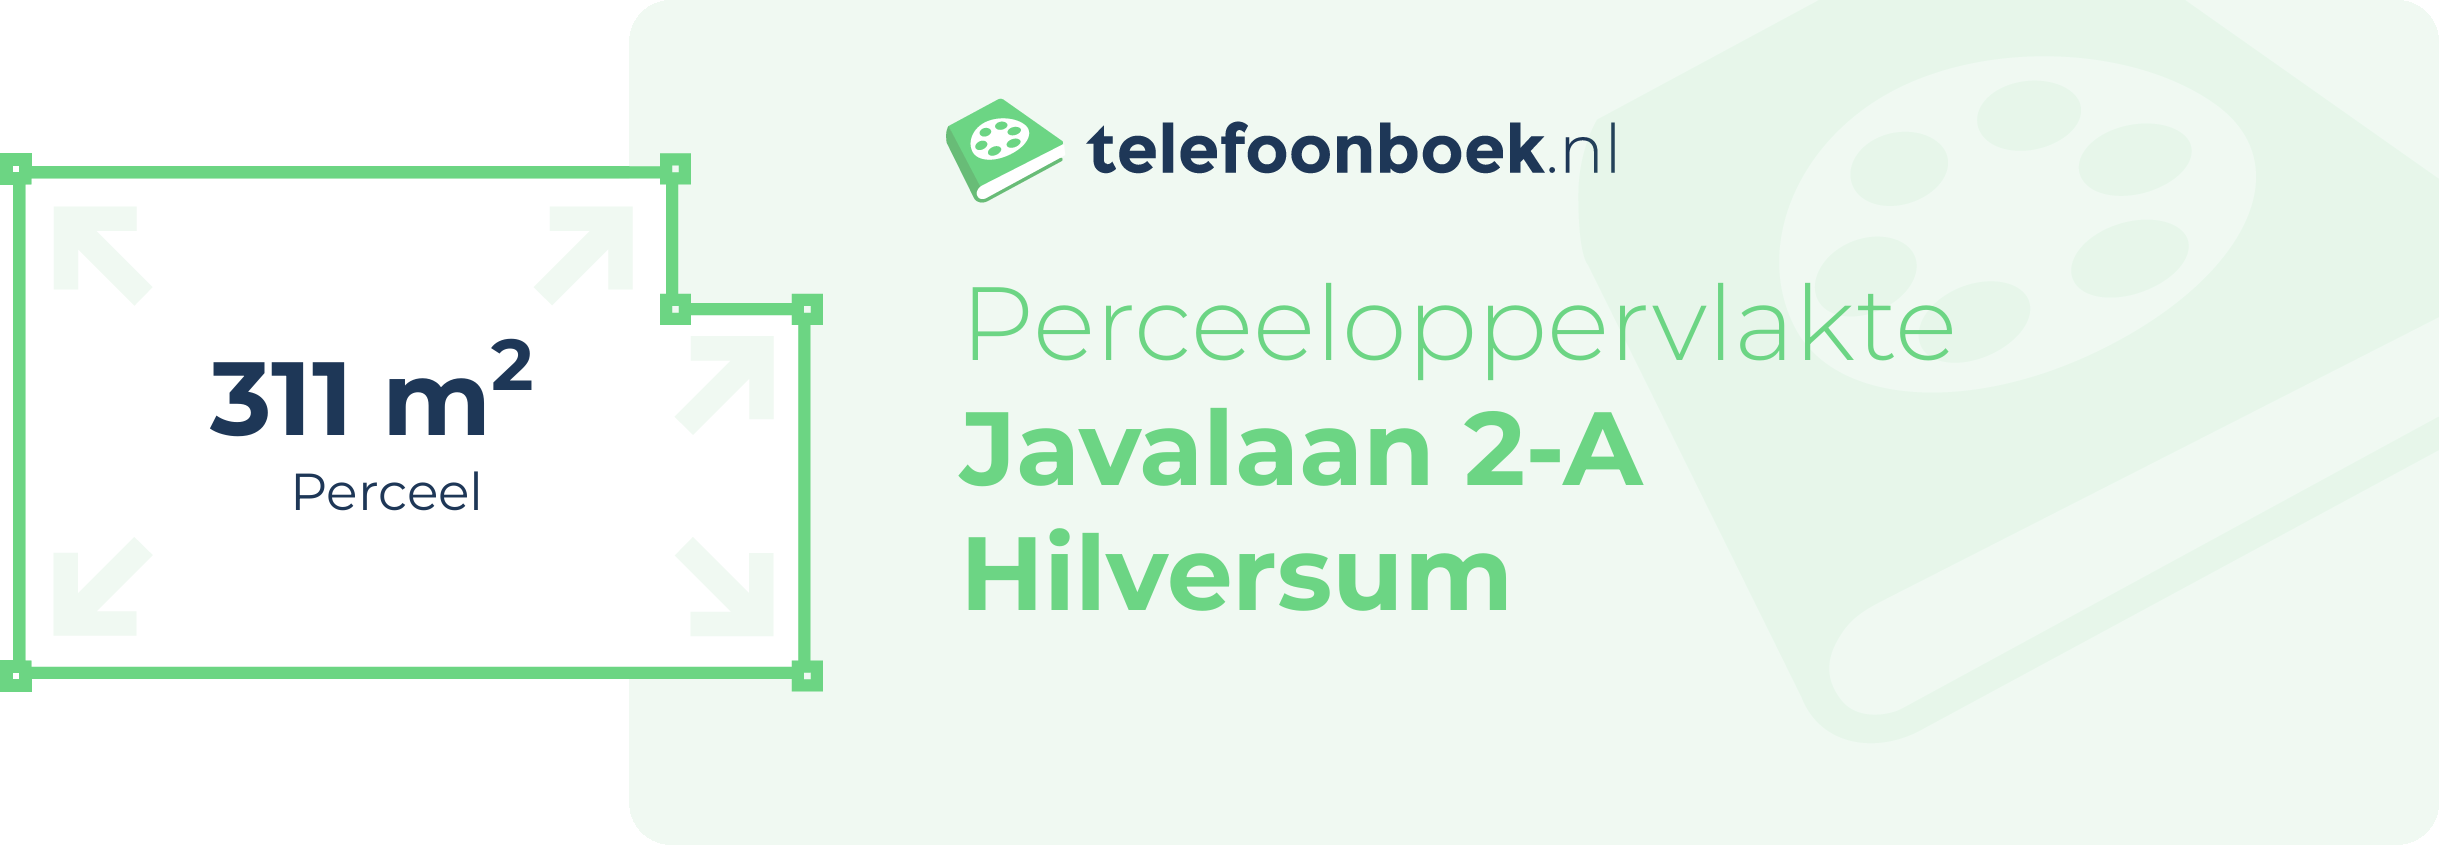 Perceeloppervlakte Javalaan 2-A Hilversum